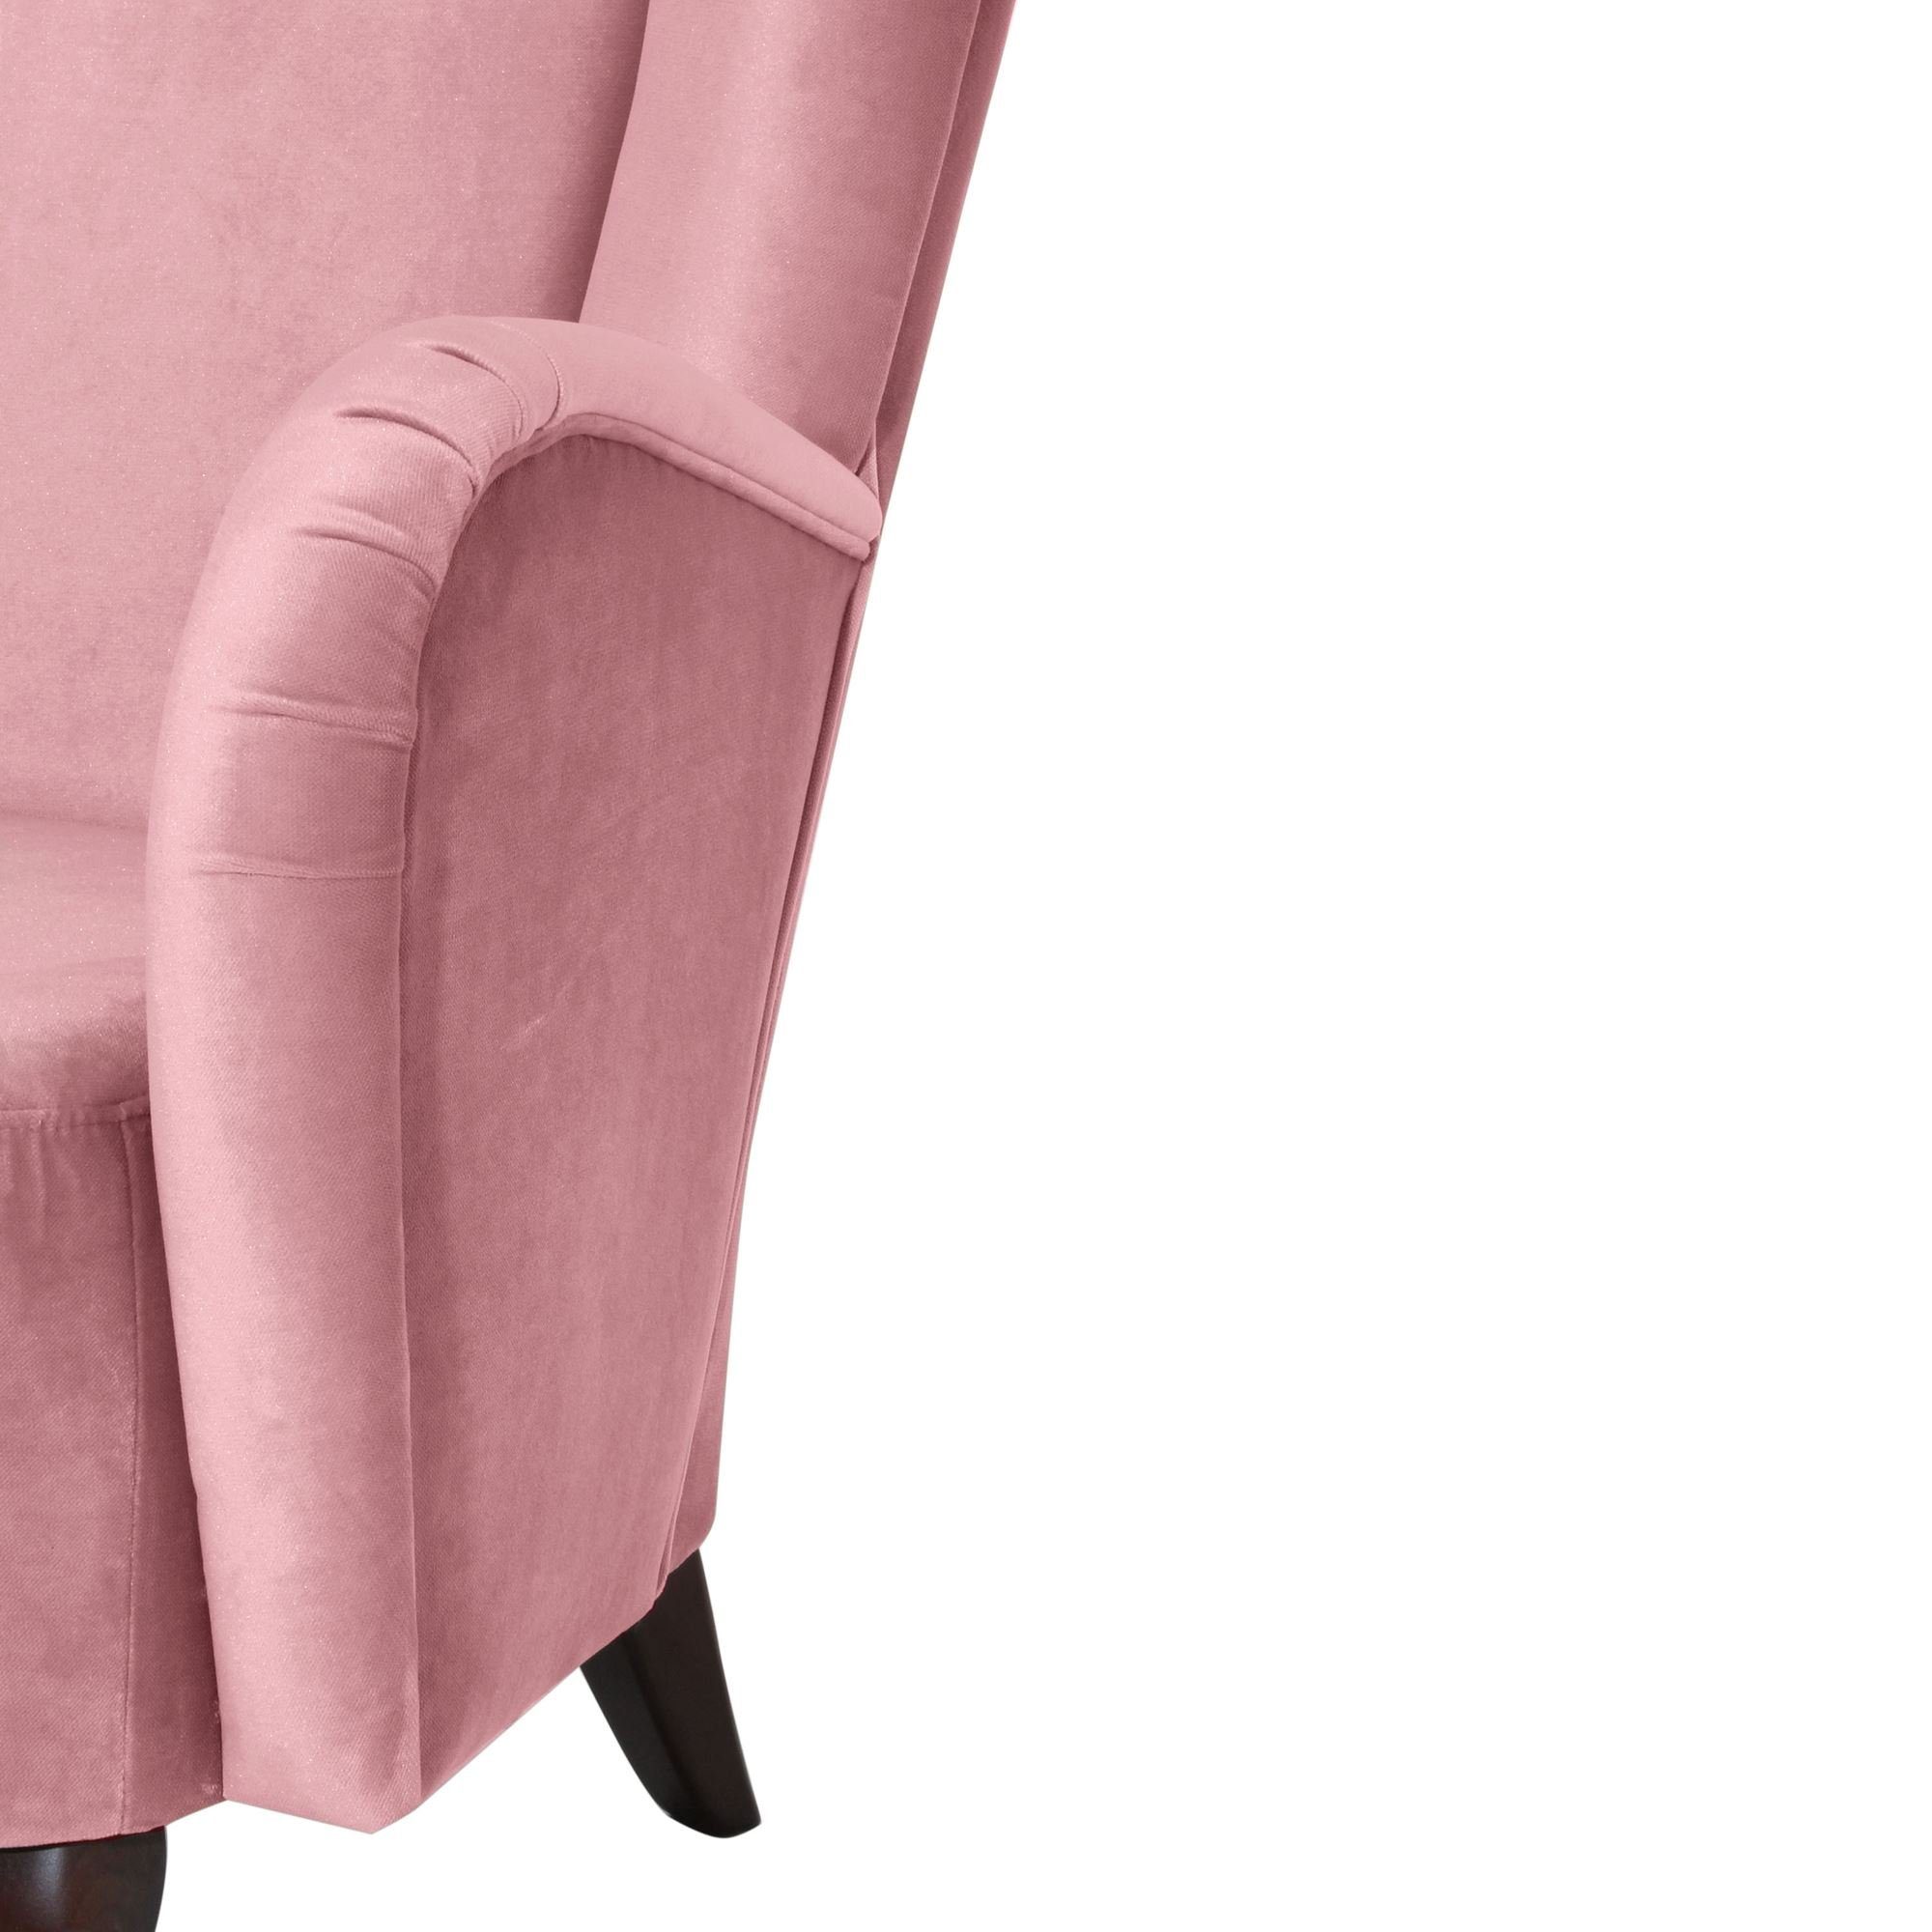 / aufm Kessel 1-St), rosé inkl. nussbaum Sessel Hochlehnsessel Buche hochwertig 58 Bezug Samtvelours Versand, Kostenlosem (Sparpreis Kailey verarbeitet,bequemer dunkel Sitz